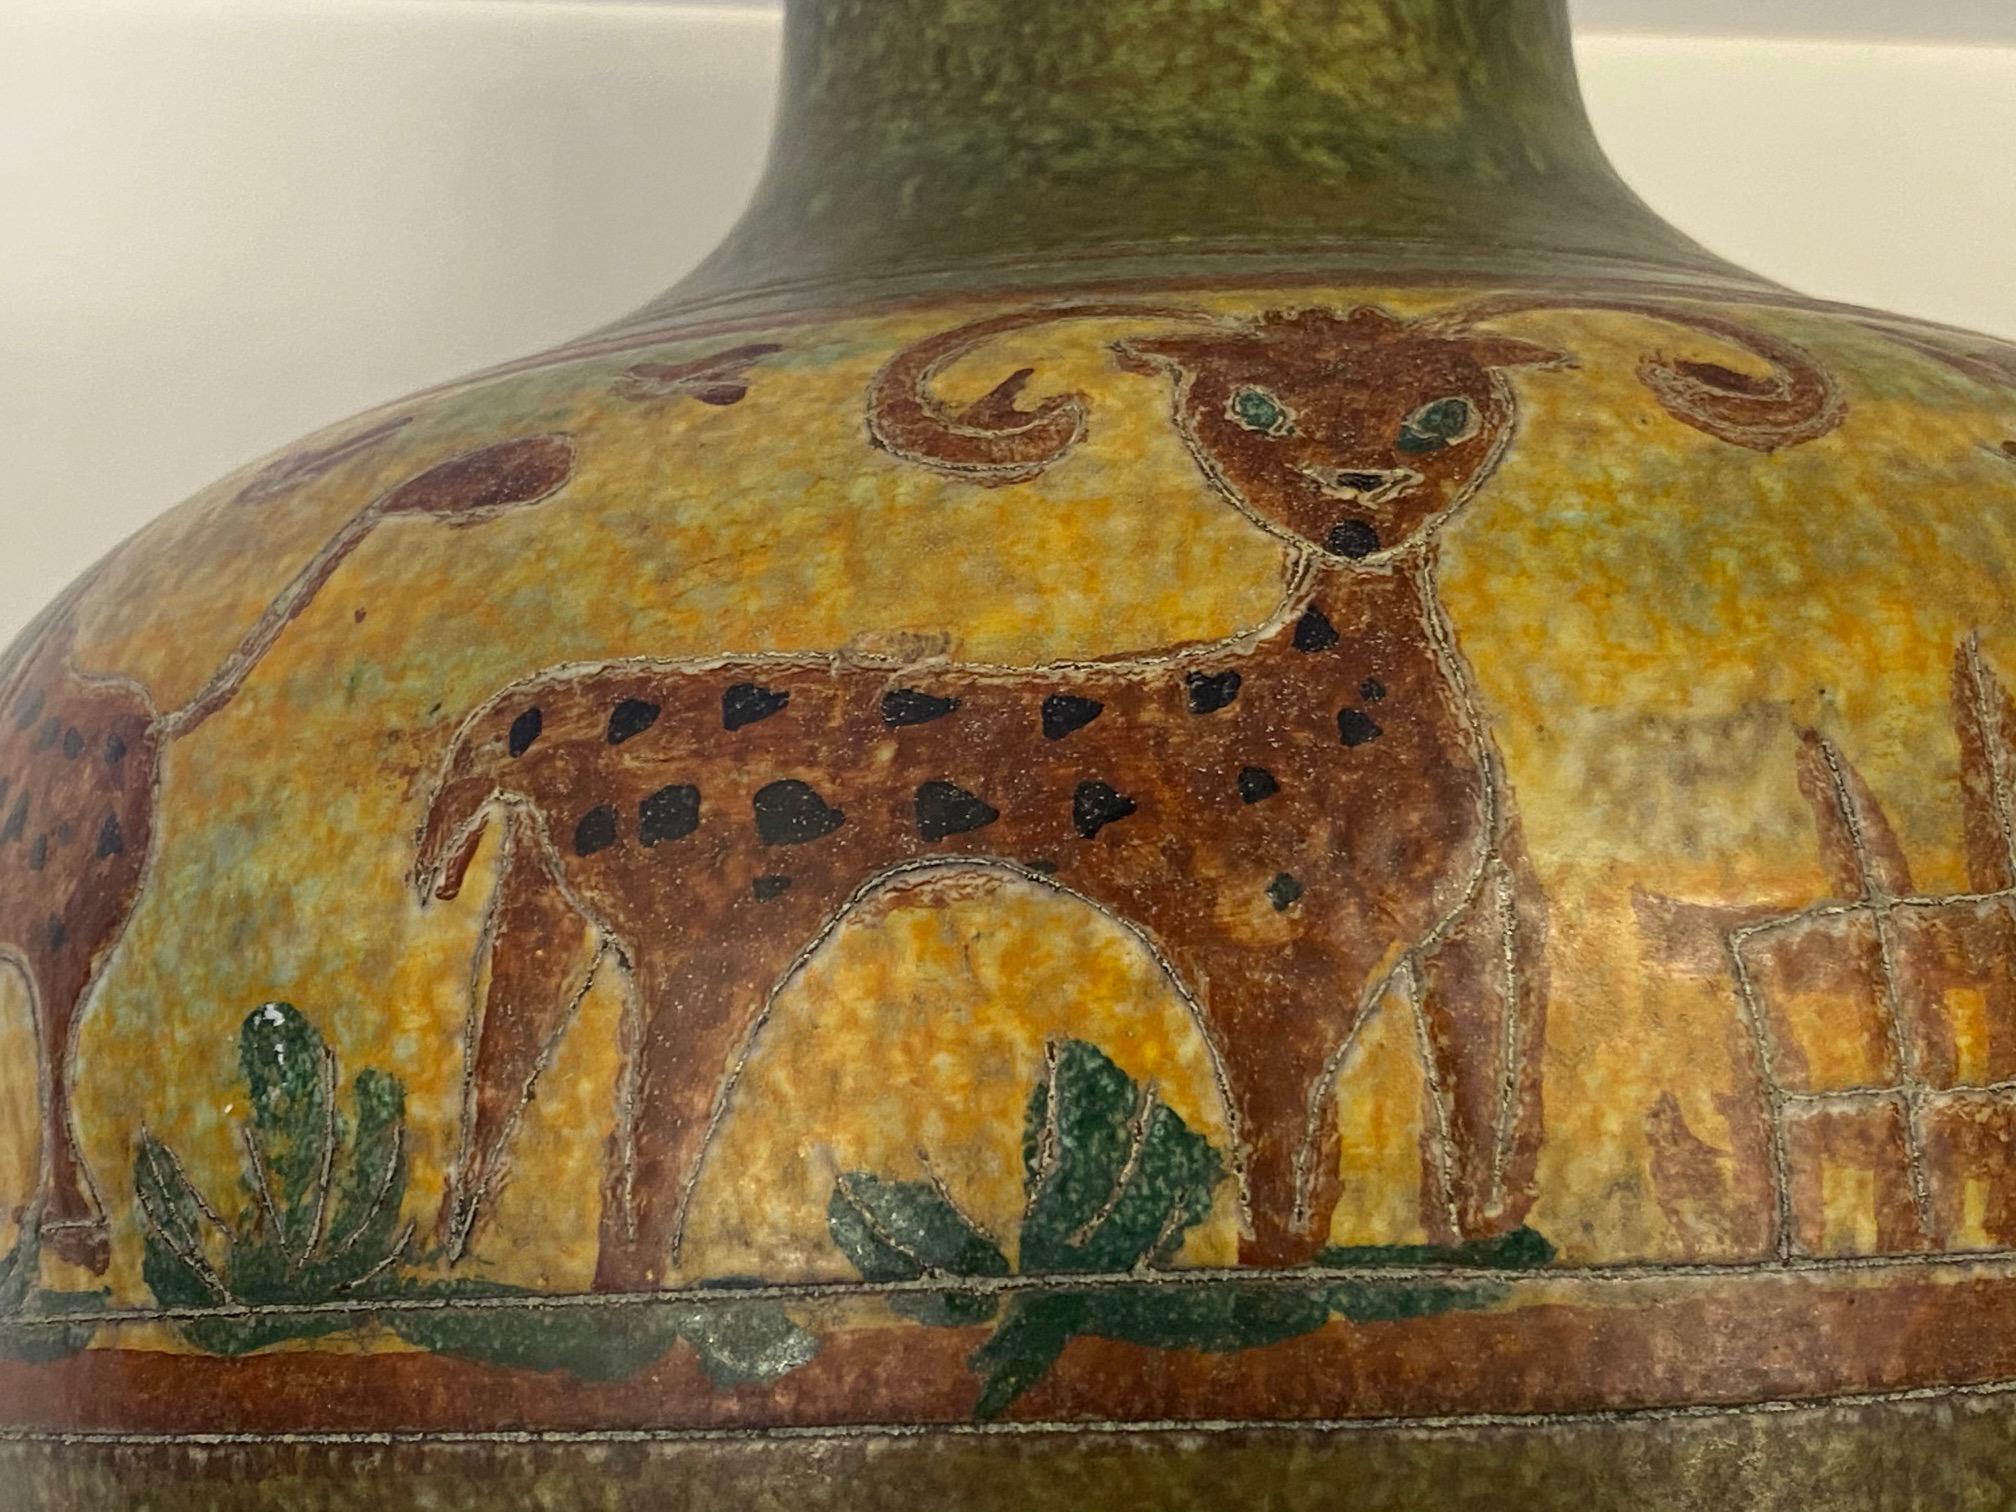 Eine auffallend große, schön dekorierte, handgedrehte italienische Keramikvase mit charmanten Tieren im naiven Stil in Erdtönen wie Grün, Braun und Gelb. Obere Öffnung 4,25